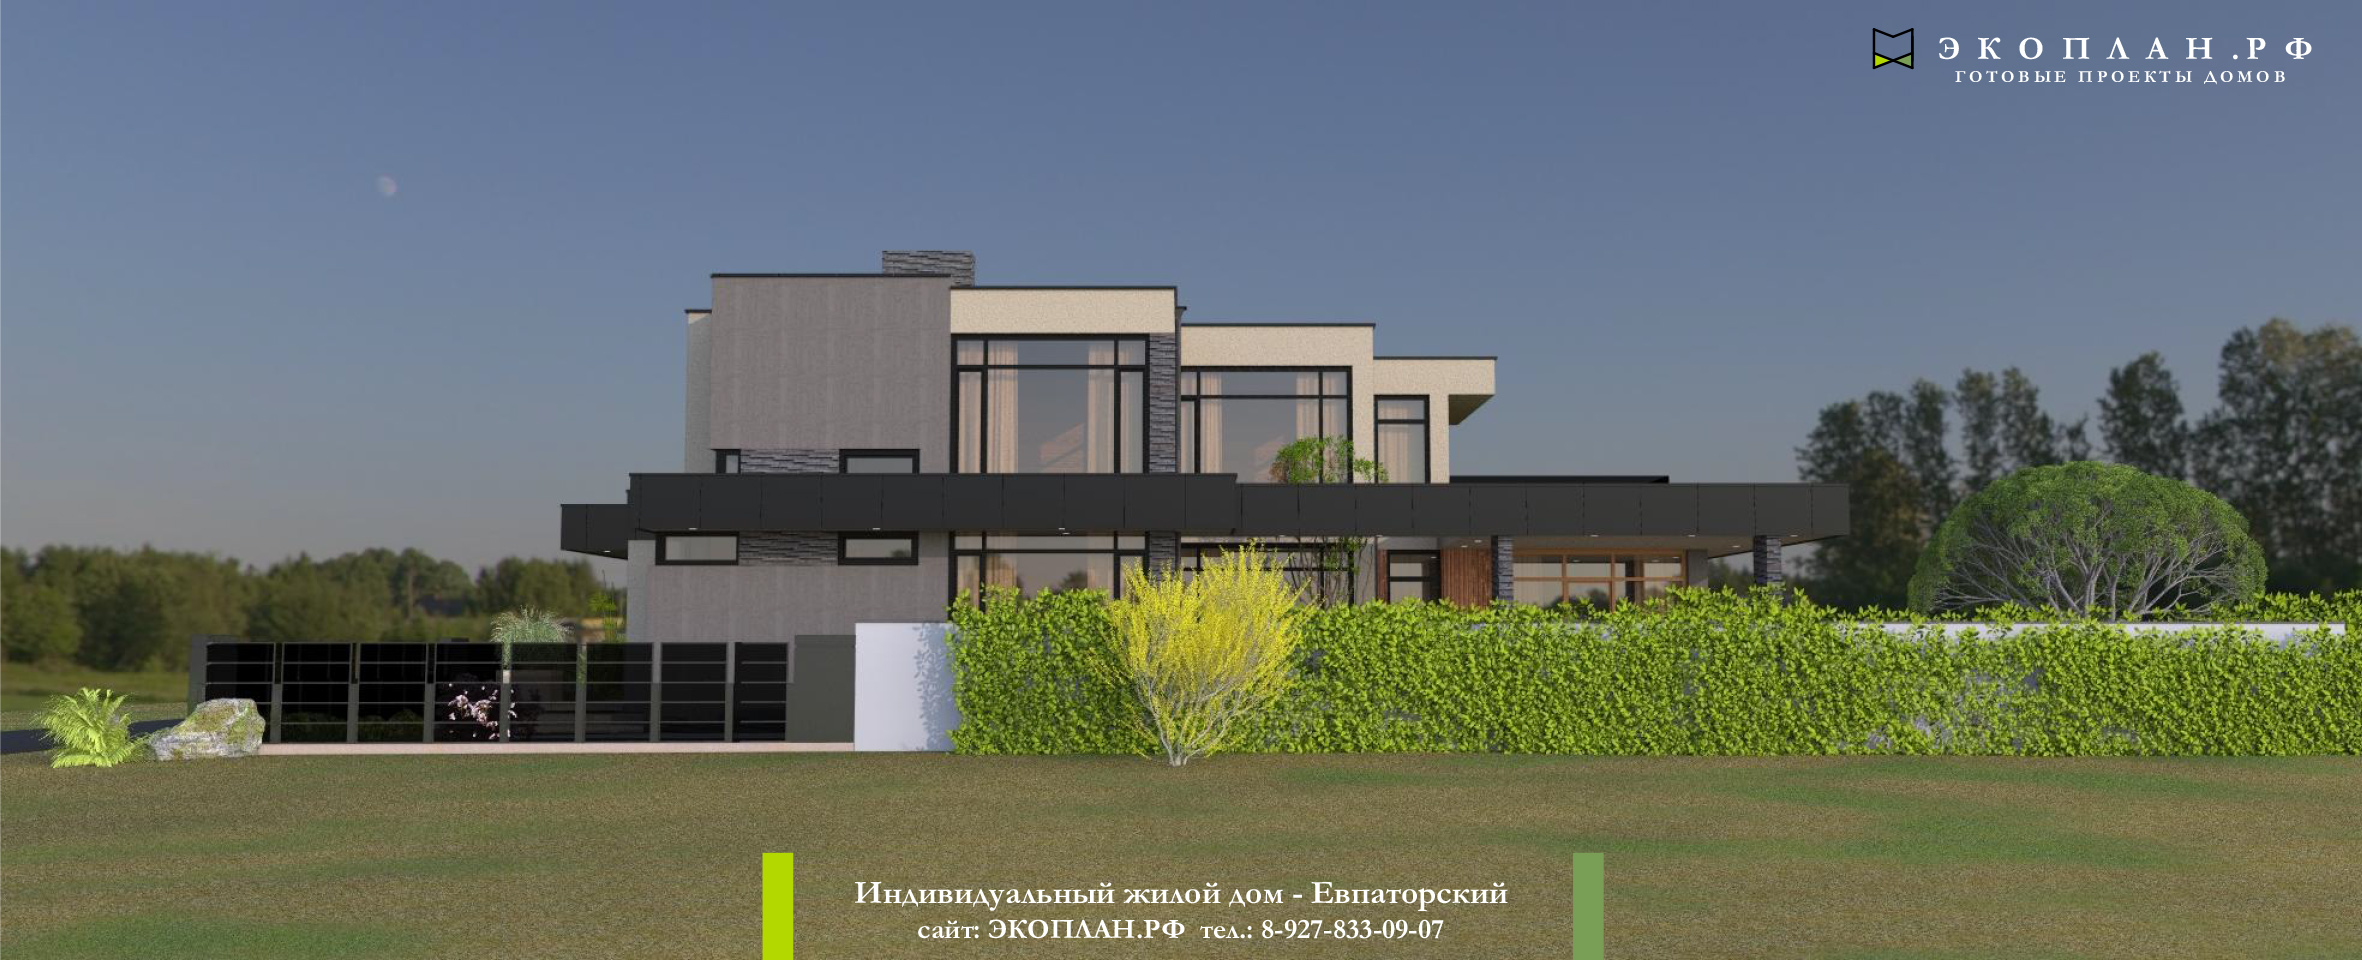 Готовый проект дома - Евпаторский - Экоплан.рф фасад